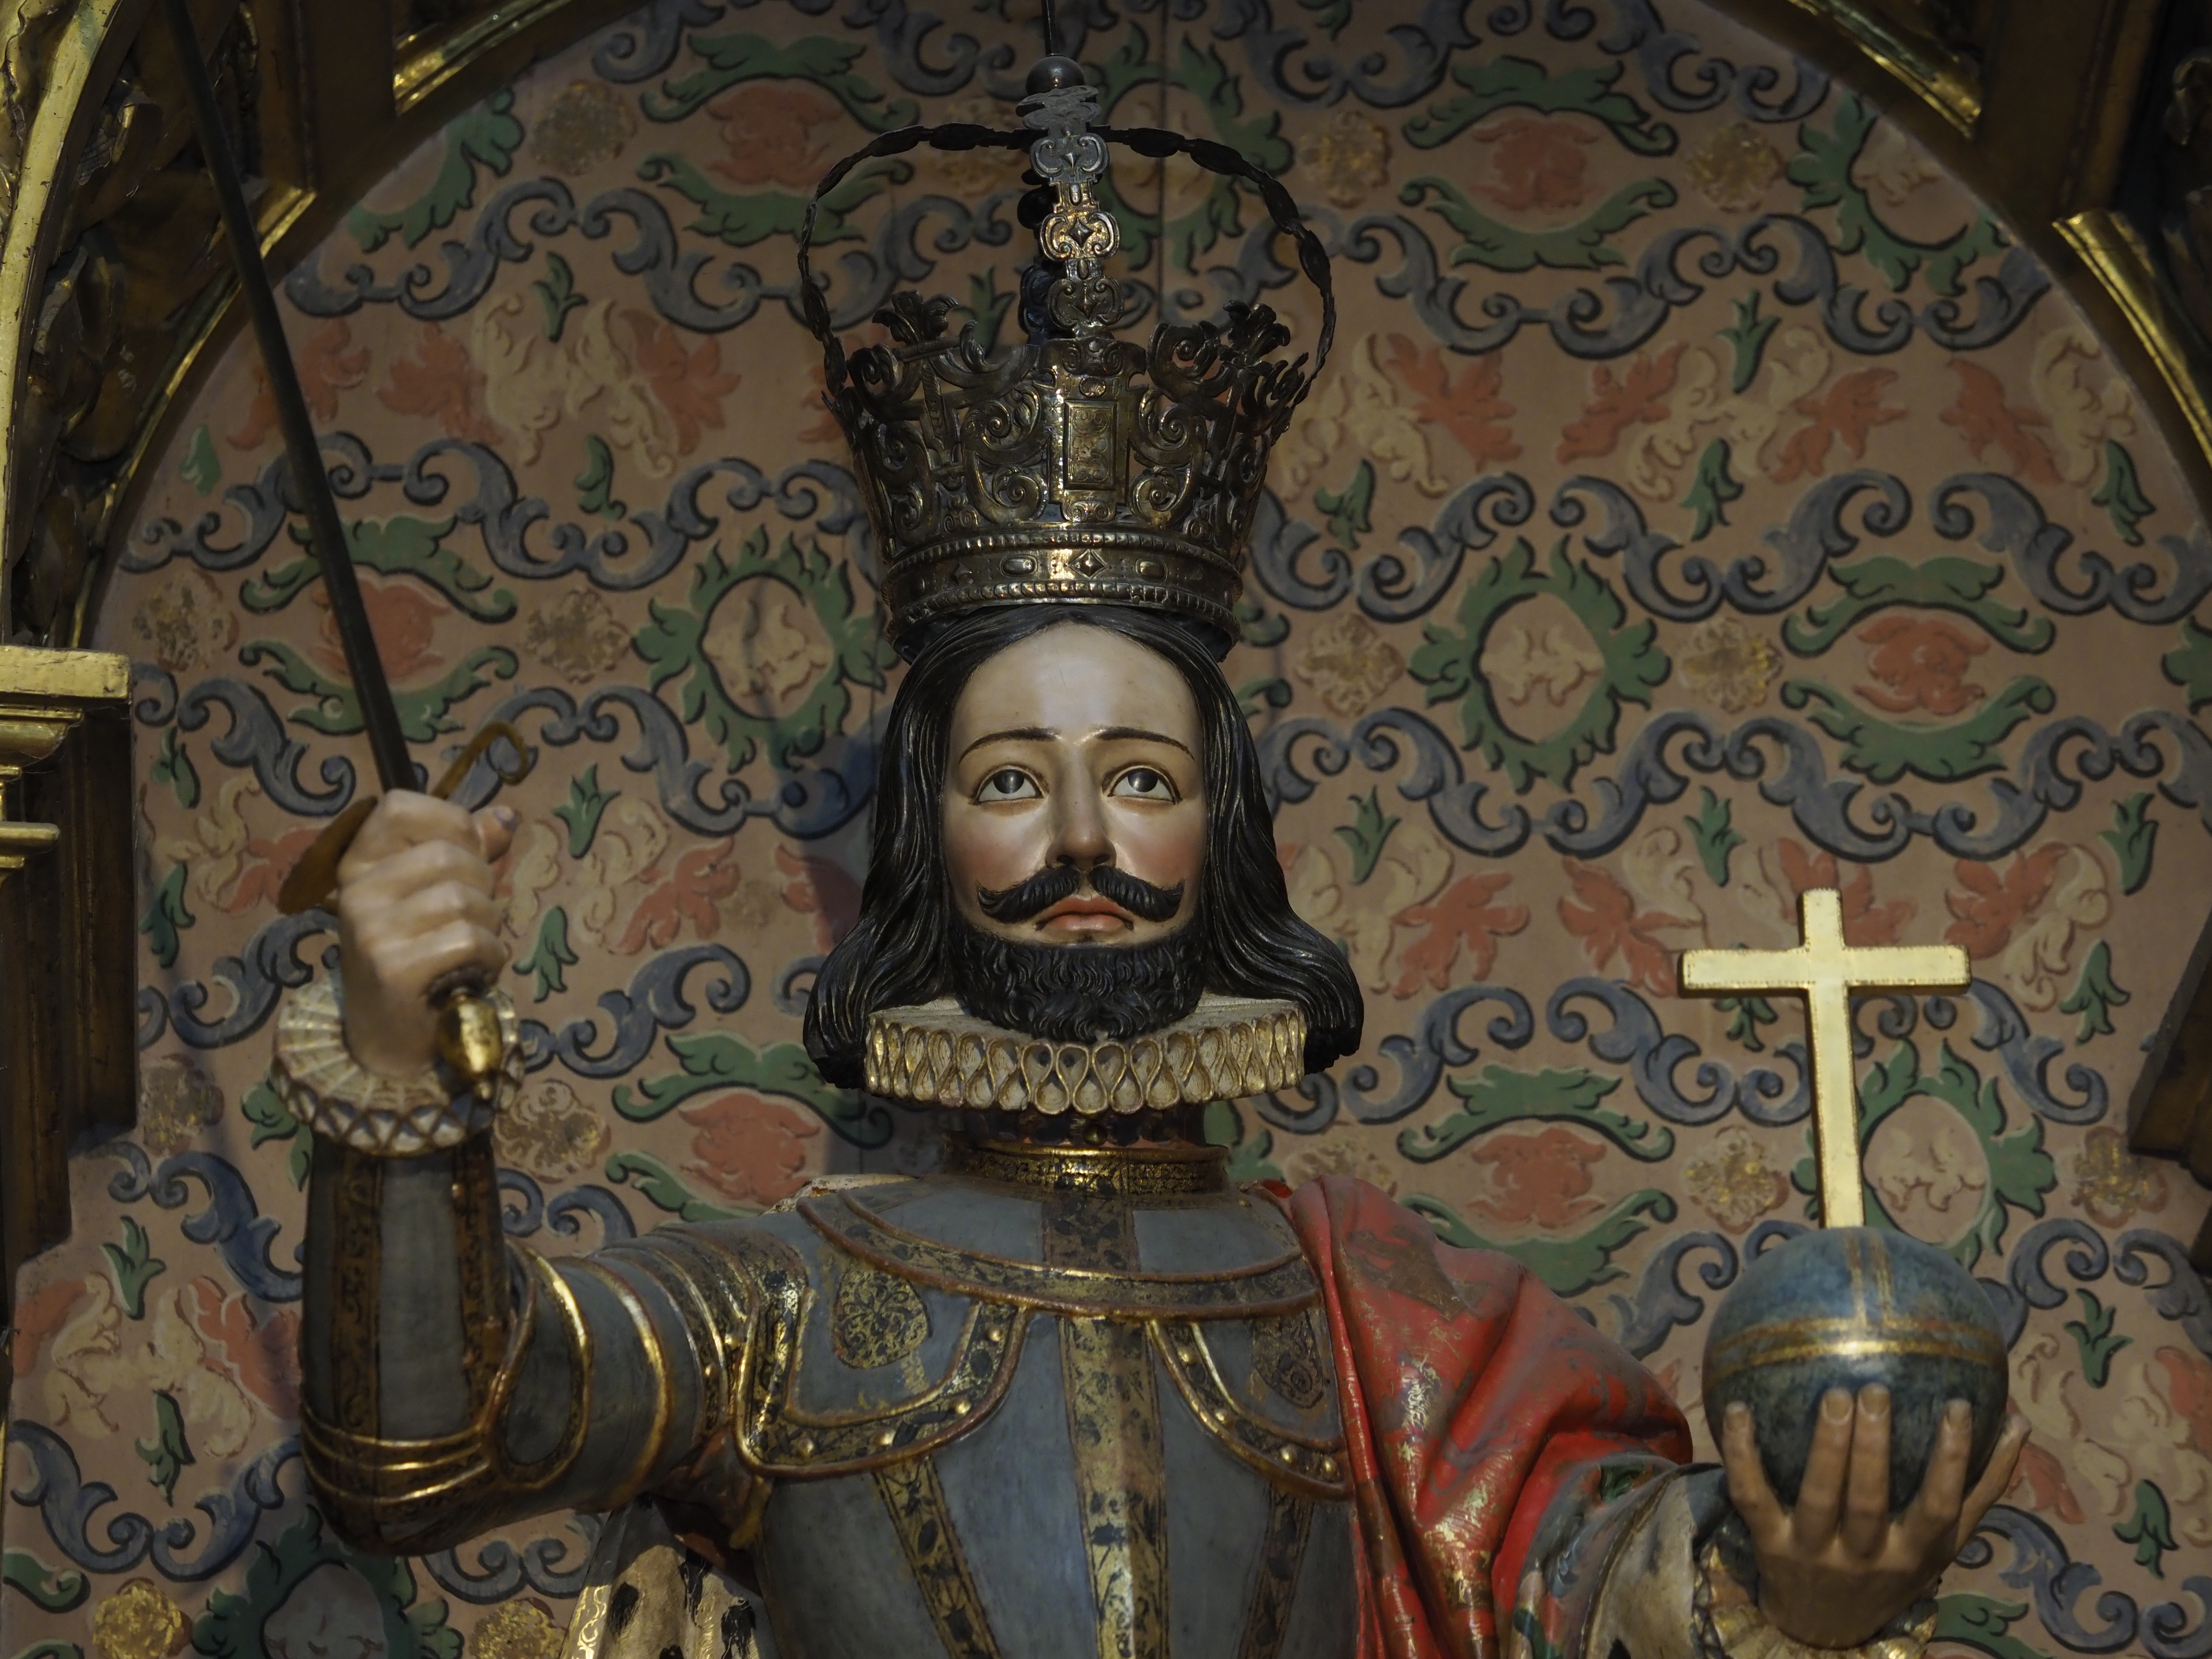 1-7-2017 - VIII Centenario de la proclamación como rey de Castilla de Fernando III